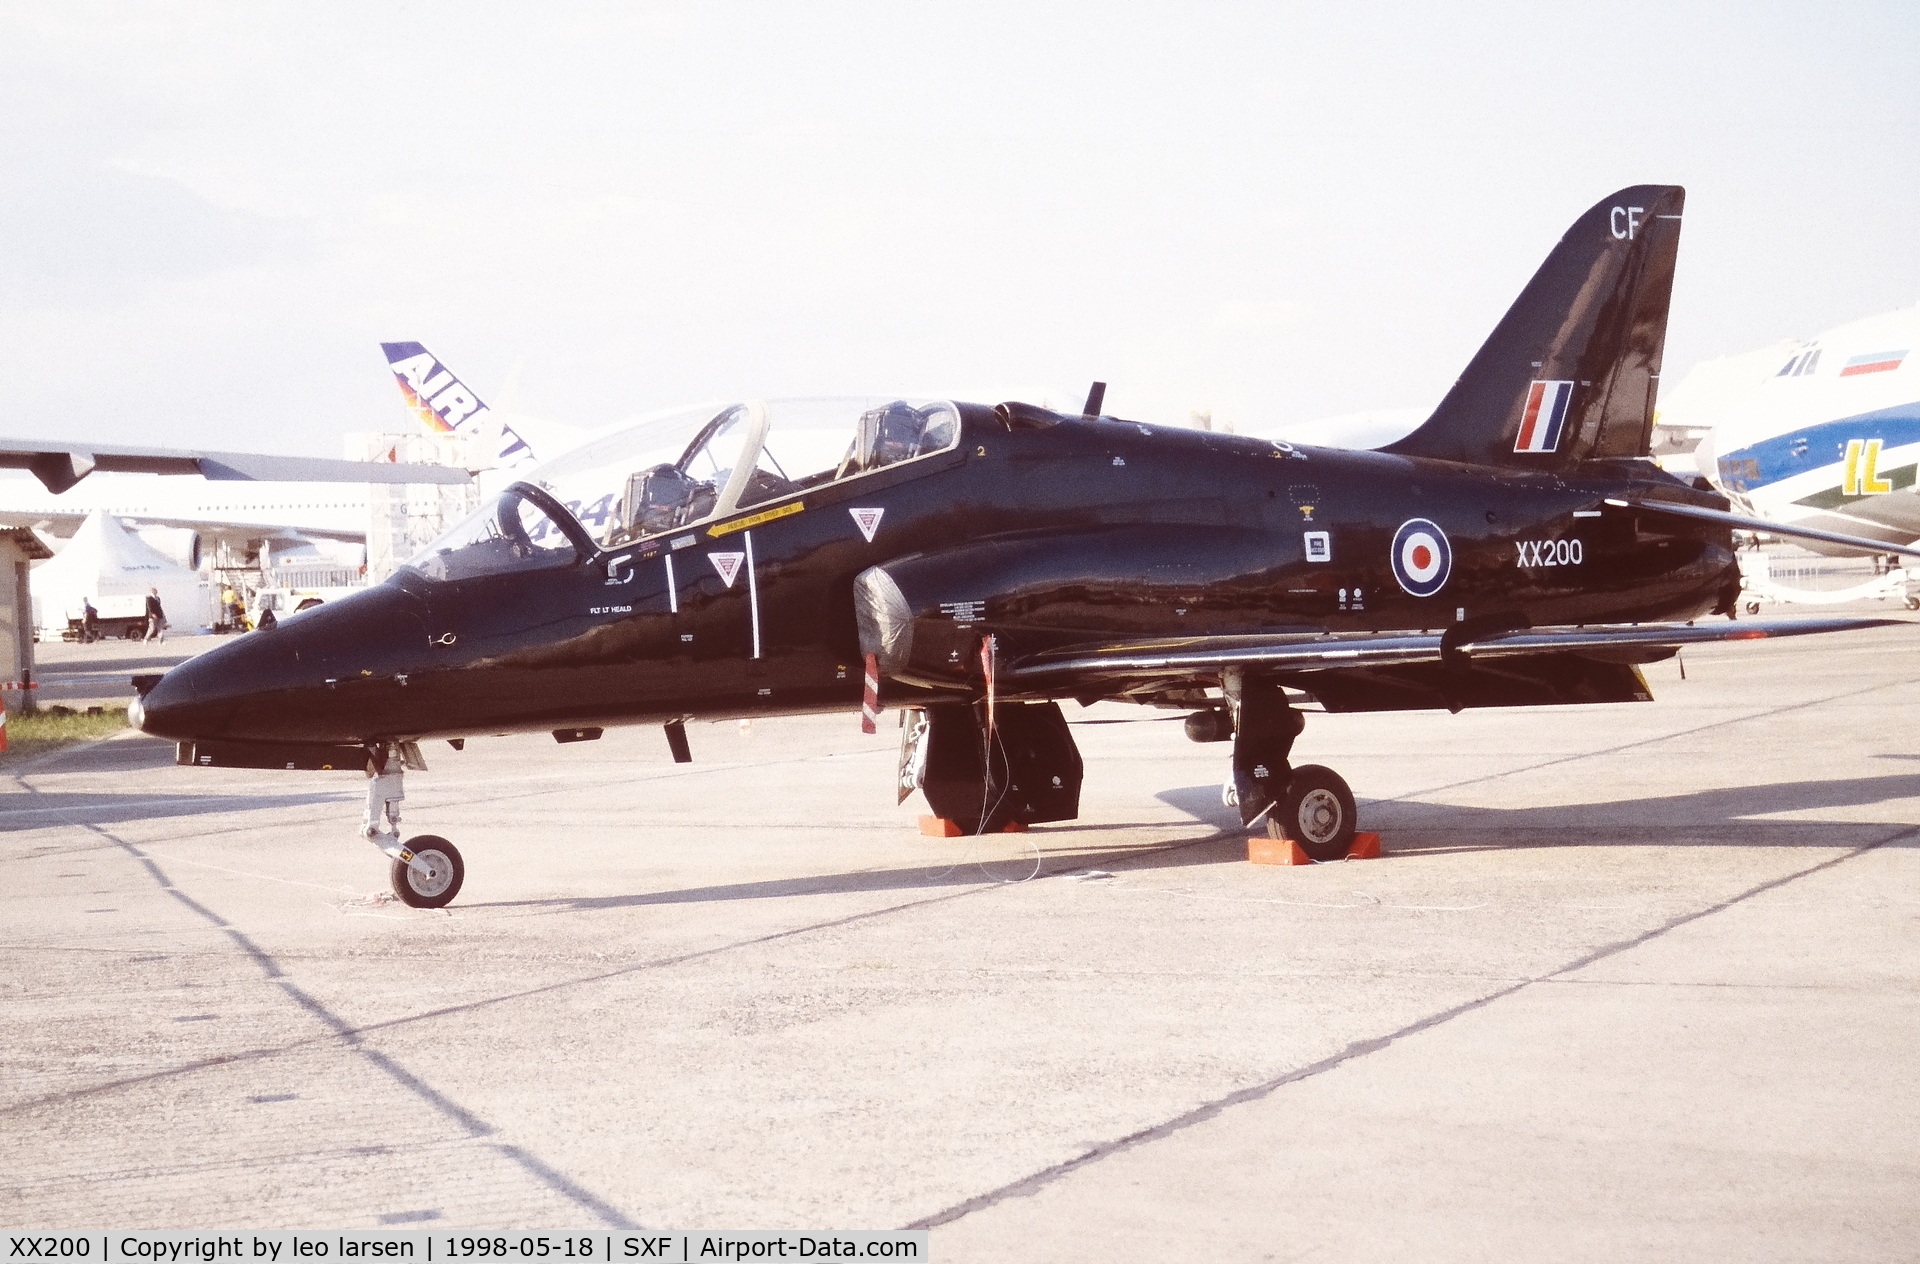 XX200, 1978 Hawker Siddeley Hawk T.1A C/N 047/312047, Berlin Air Show 18.5.1998